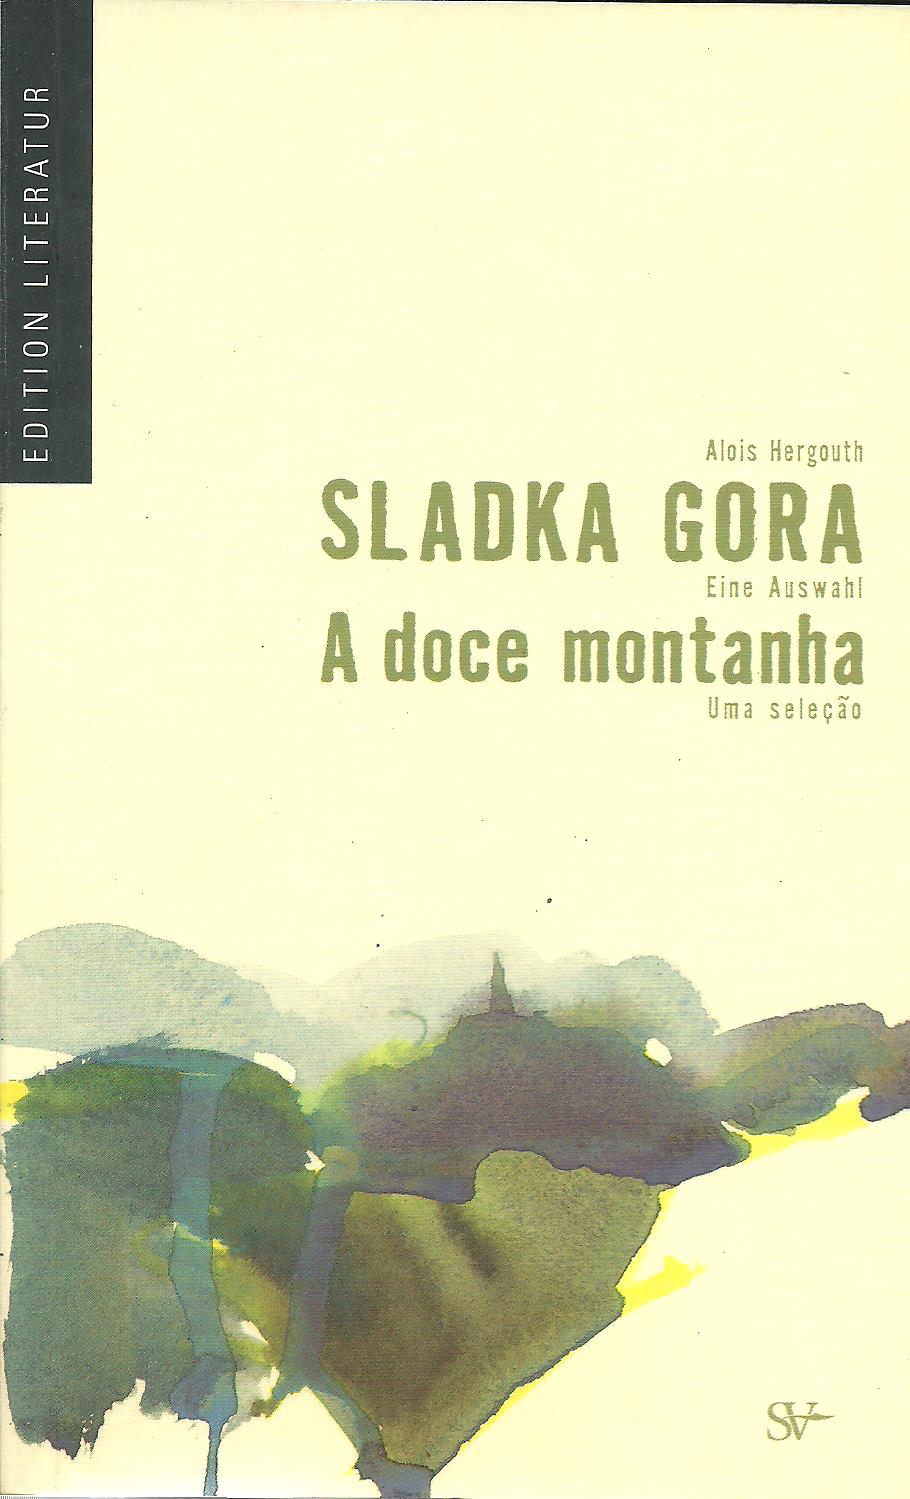 Alois Hergouth: Sladka Gora - eine Auswahl